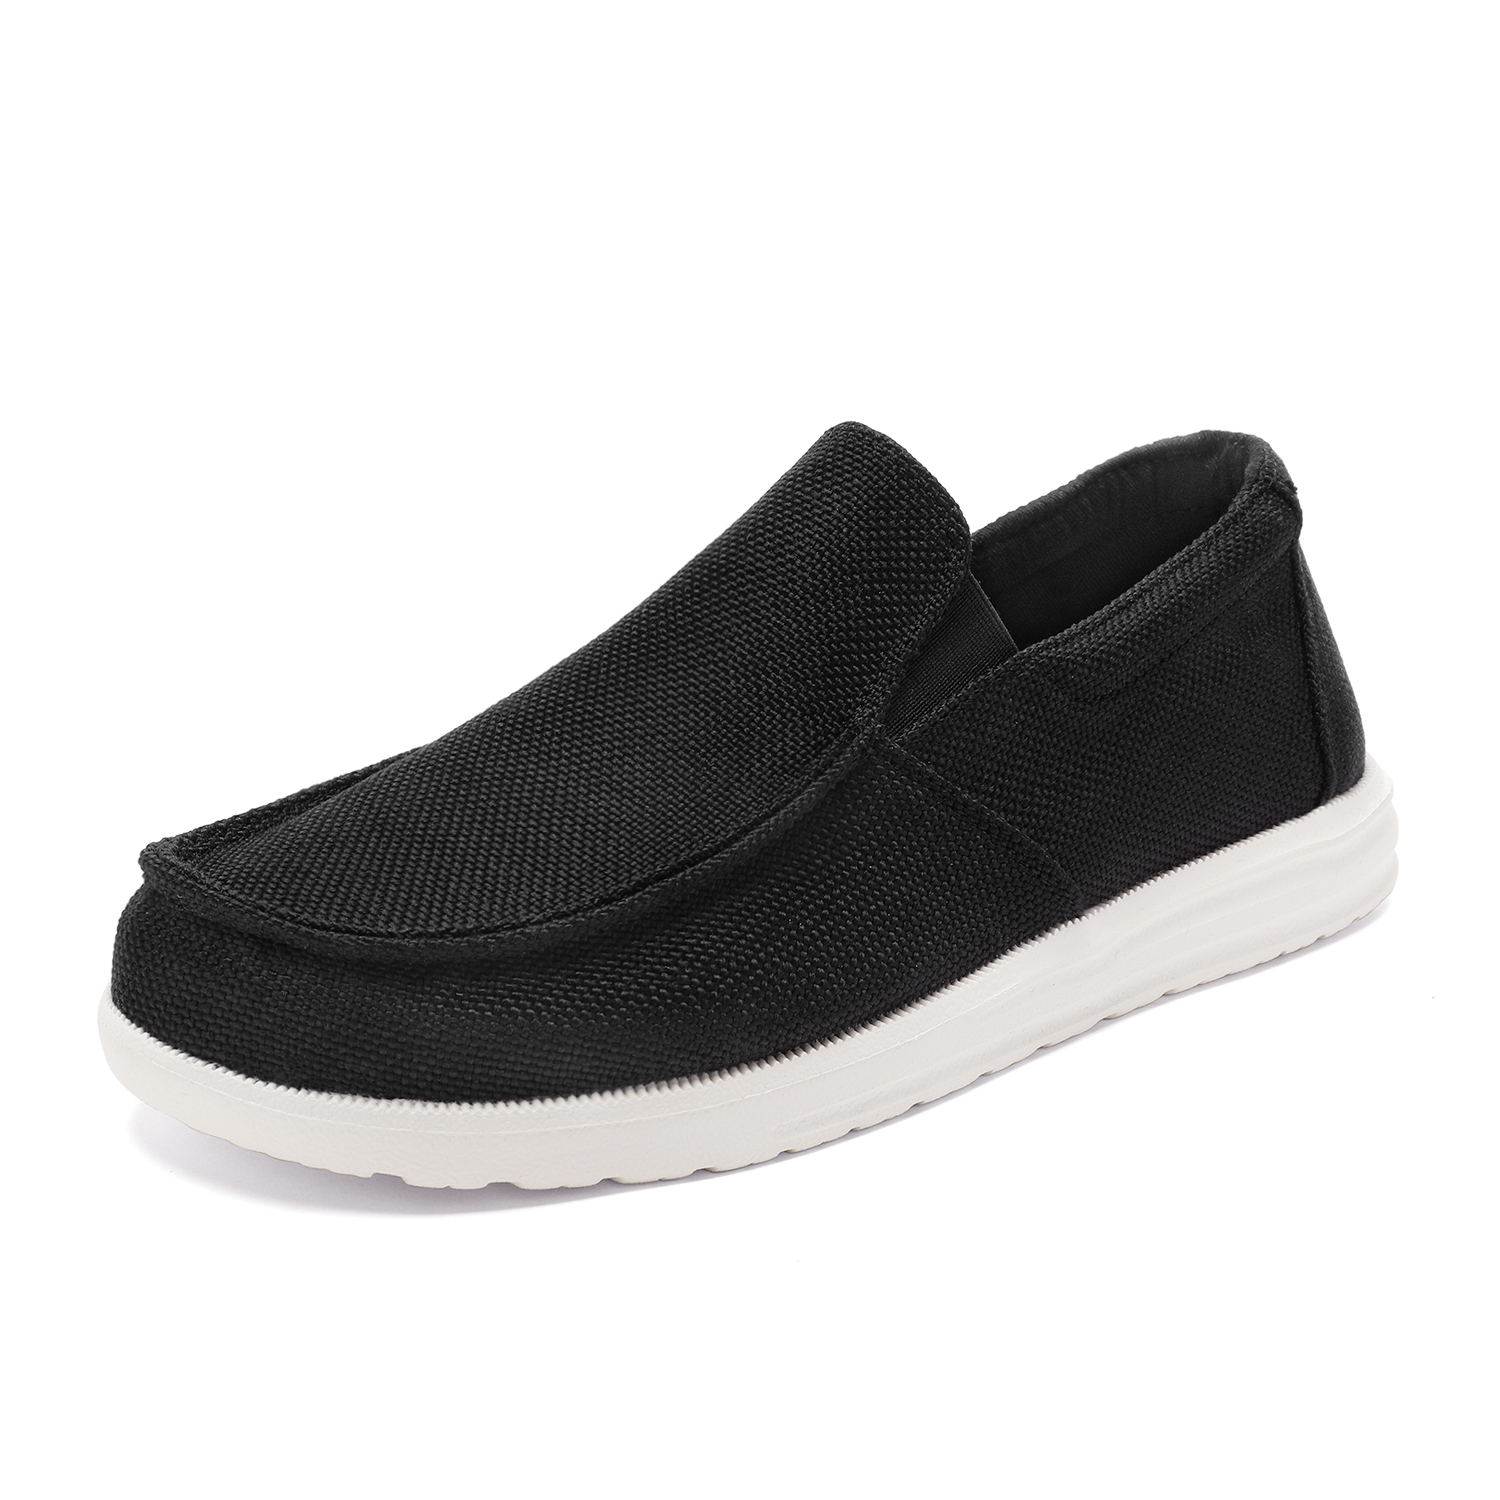 Bruno Marc Men's Slip On Loafer Walking Shoes SUNVENT-01 BLACK size 8.5 - image 1 of 5